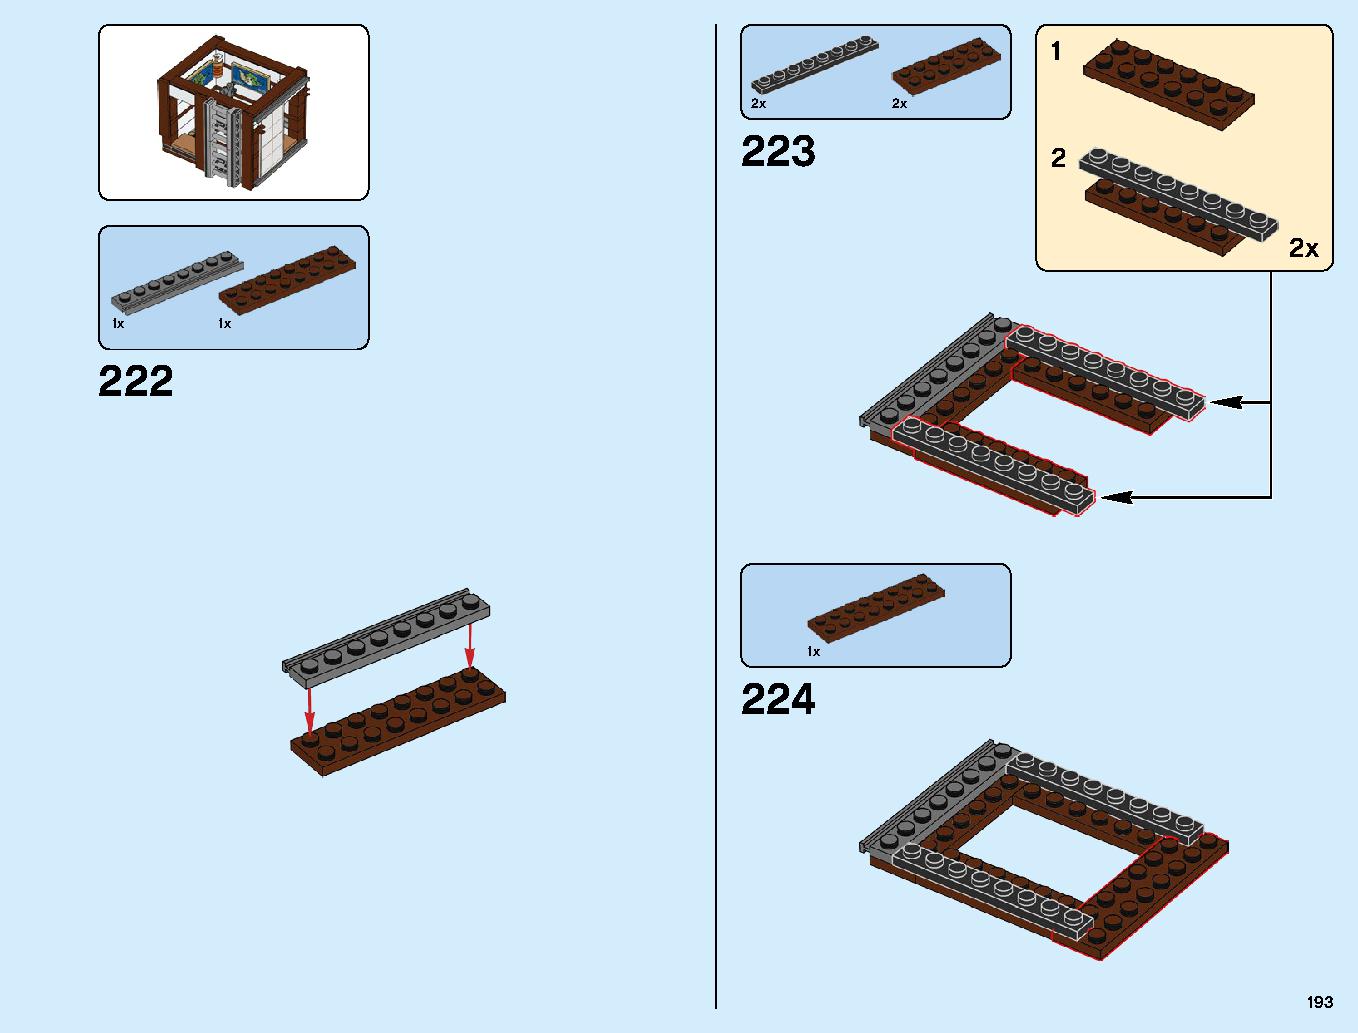 ニンジャゴーシティ・ポートパーク 70657 レゴの商品情報 レゴの説明書・組立方法 193 page